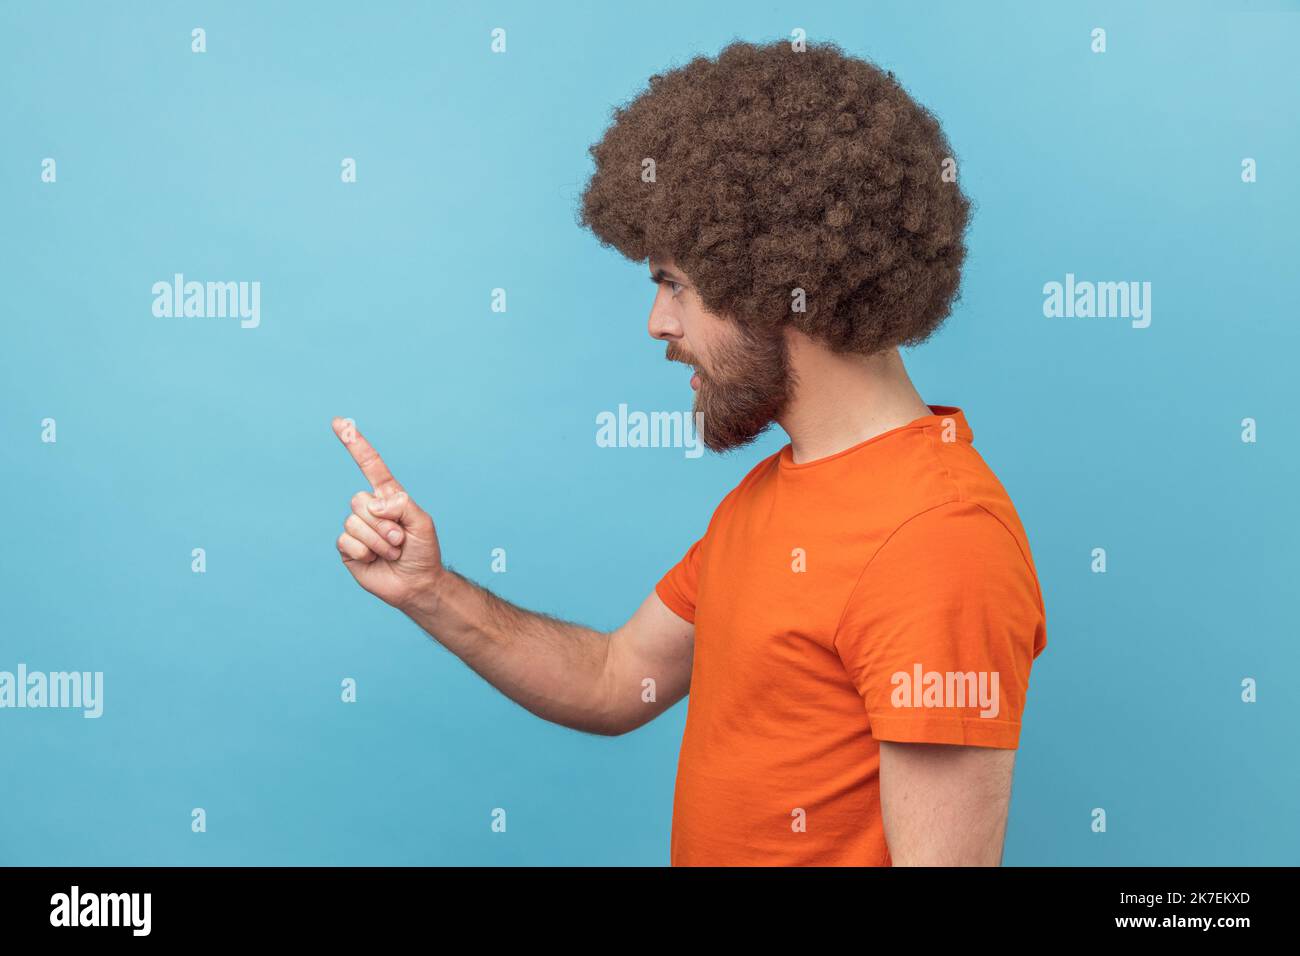 Vue latérale d'un homme sérieux avec une coiffure afro portant un T-shirt orange debout avec un geste d'admonishing, en faisant des signes d'erreur et d'avertissement. Studio d'intérieur isolé sur fond bleu. Banque D'Images